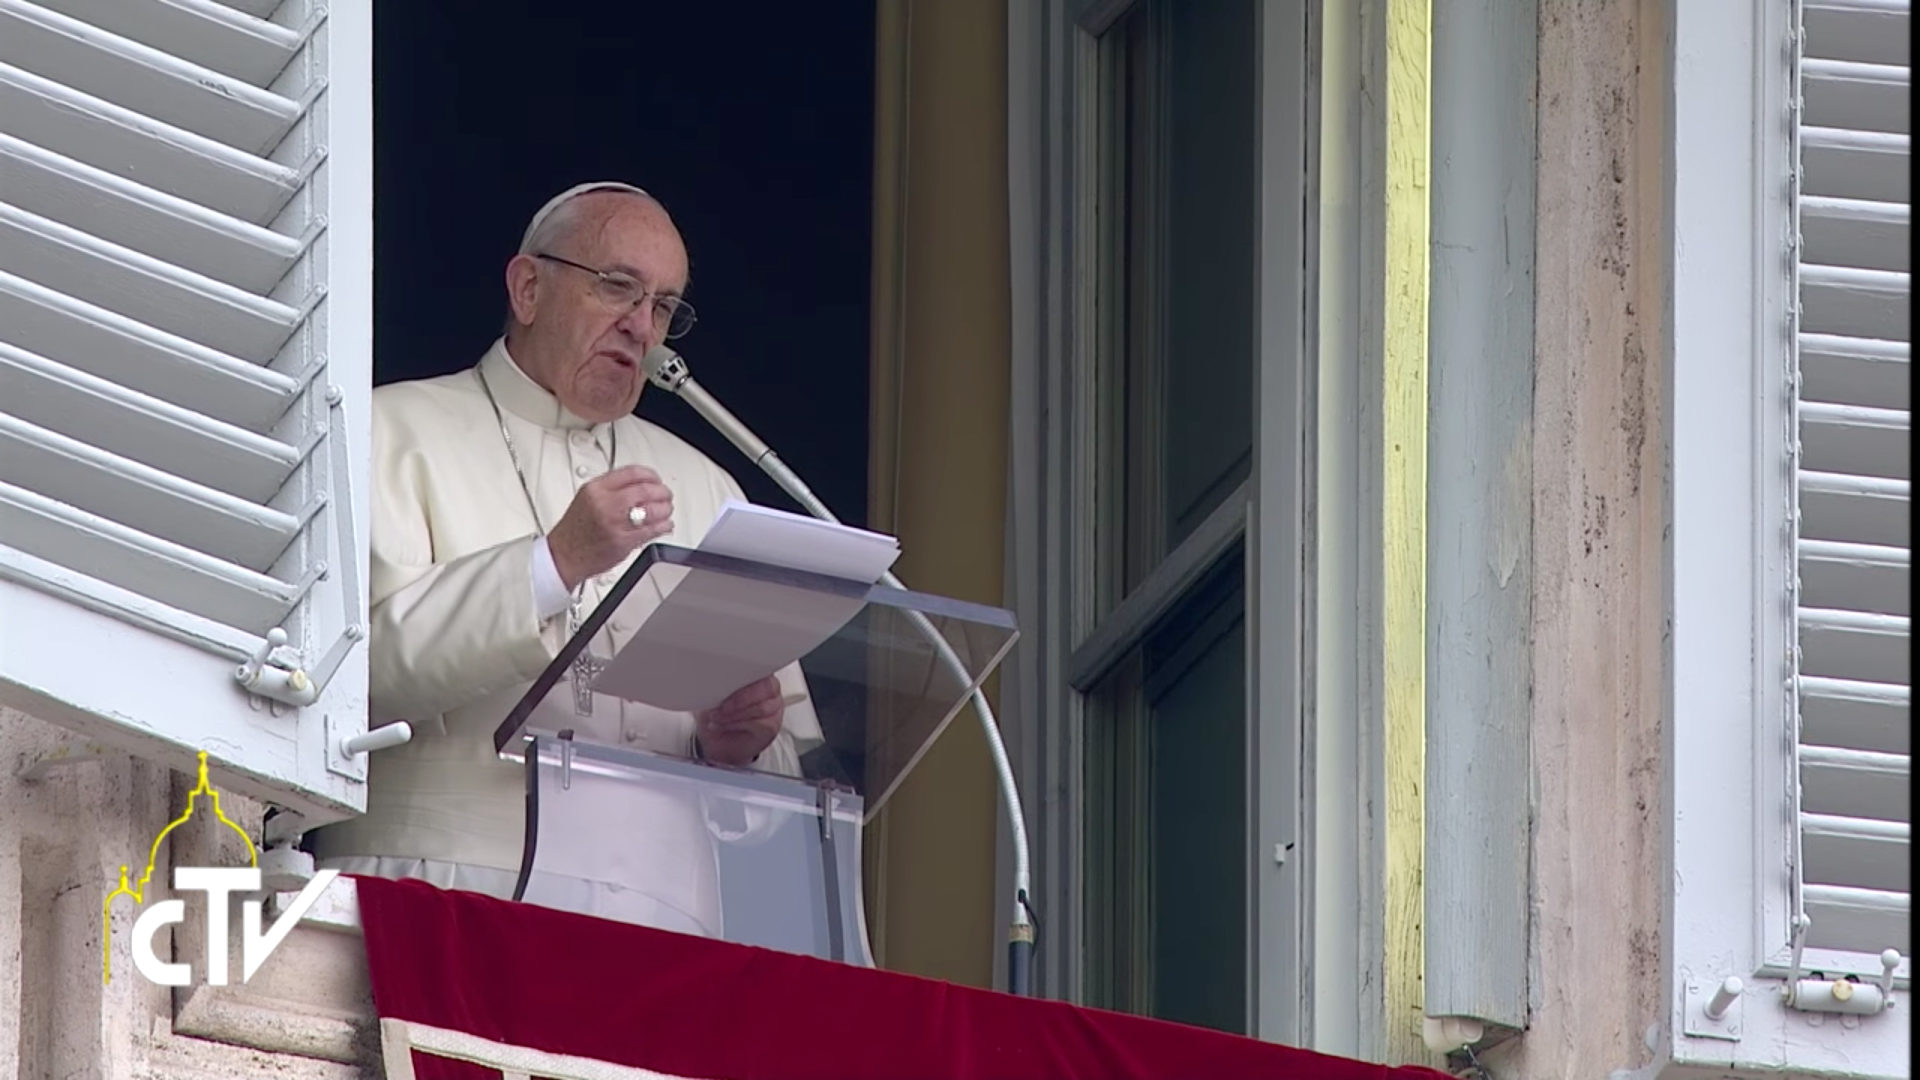 La prière du Notre-Père accompagne le cri de ceux qui ont faim, affirme le pape | © CTV